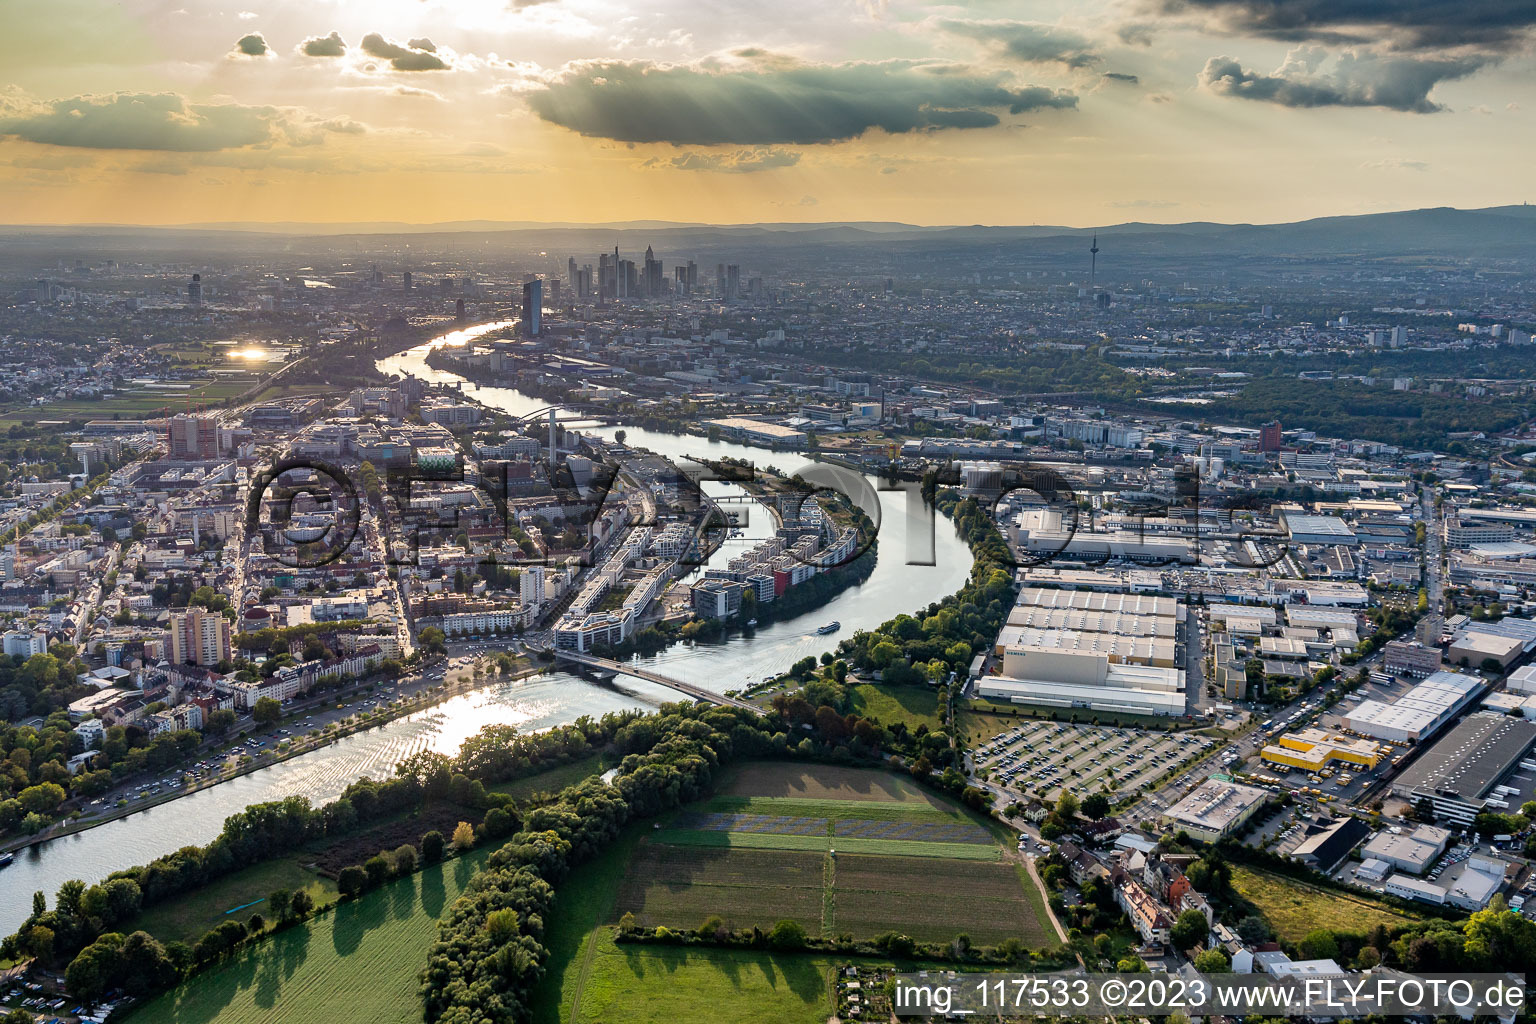 Luftbild von Wohngebiet der Mehrfamilienhaussiedlung auf der ABG Hafeninsel am Ufer des Main in Offenbach am Main im Bundesland Hessen, Deutschland